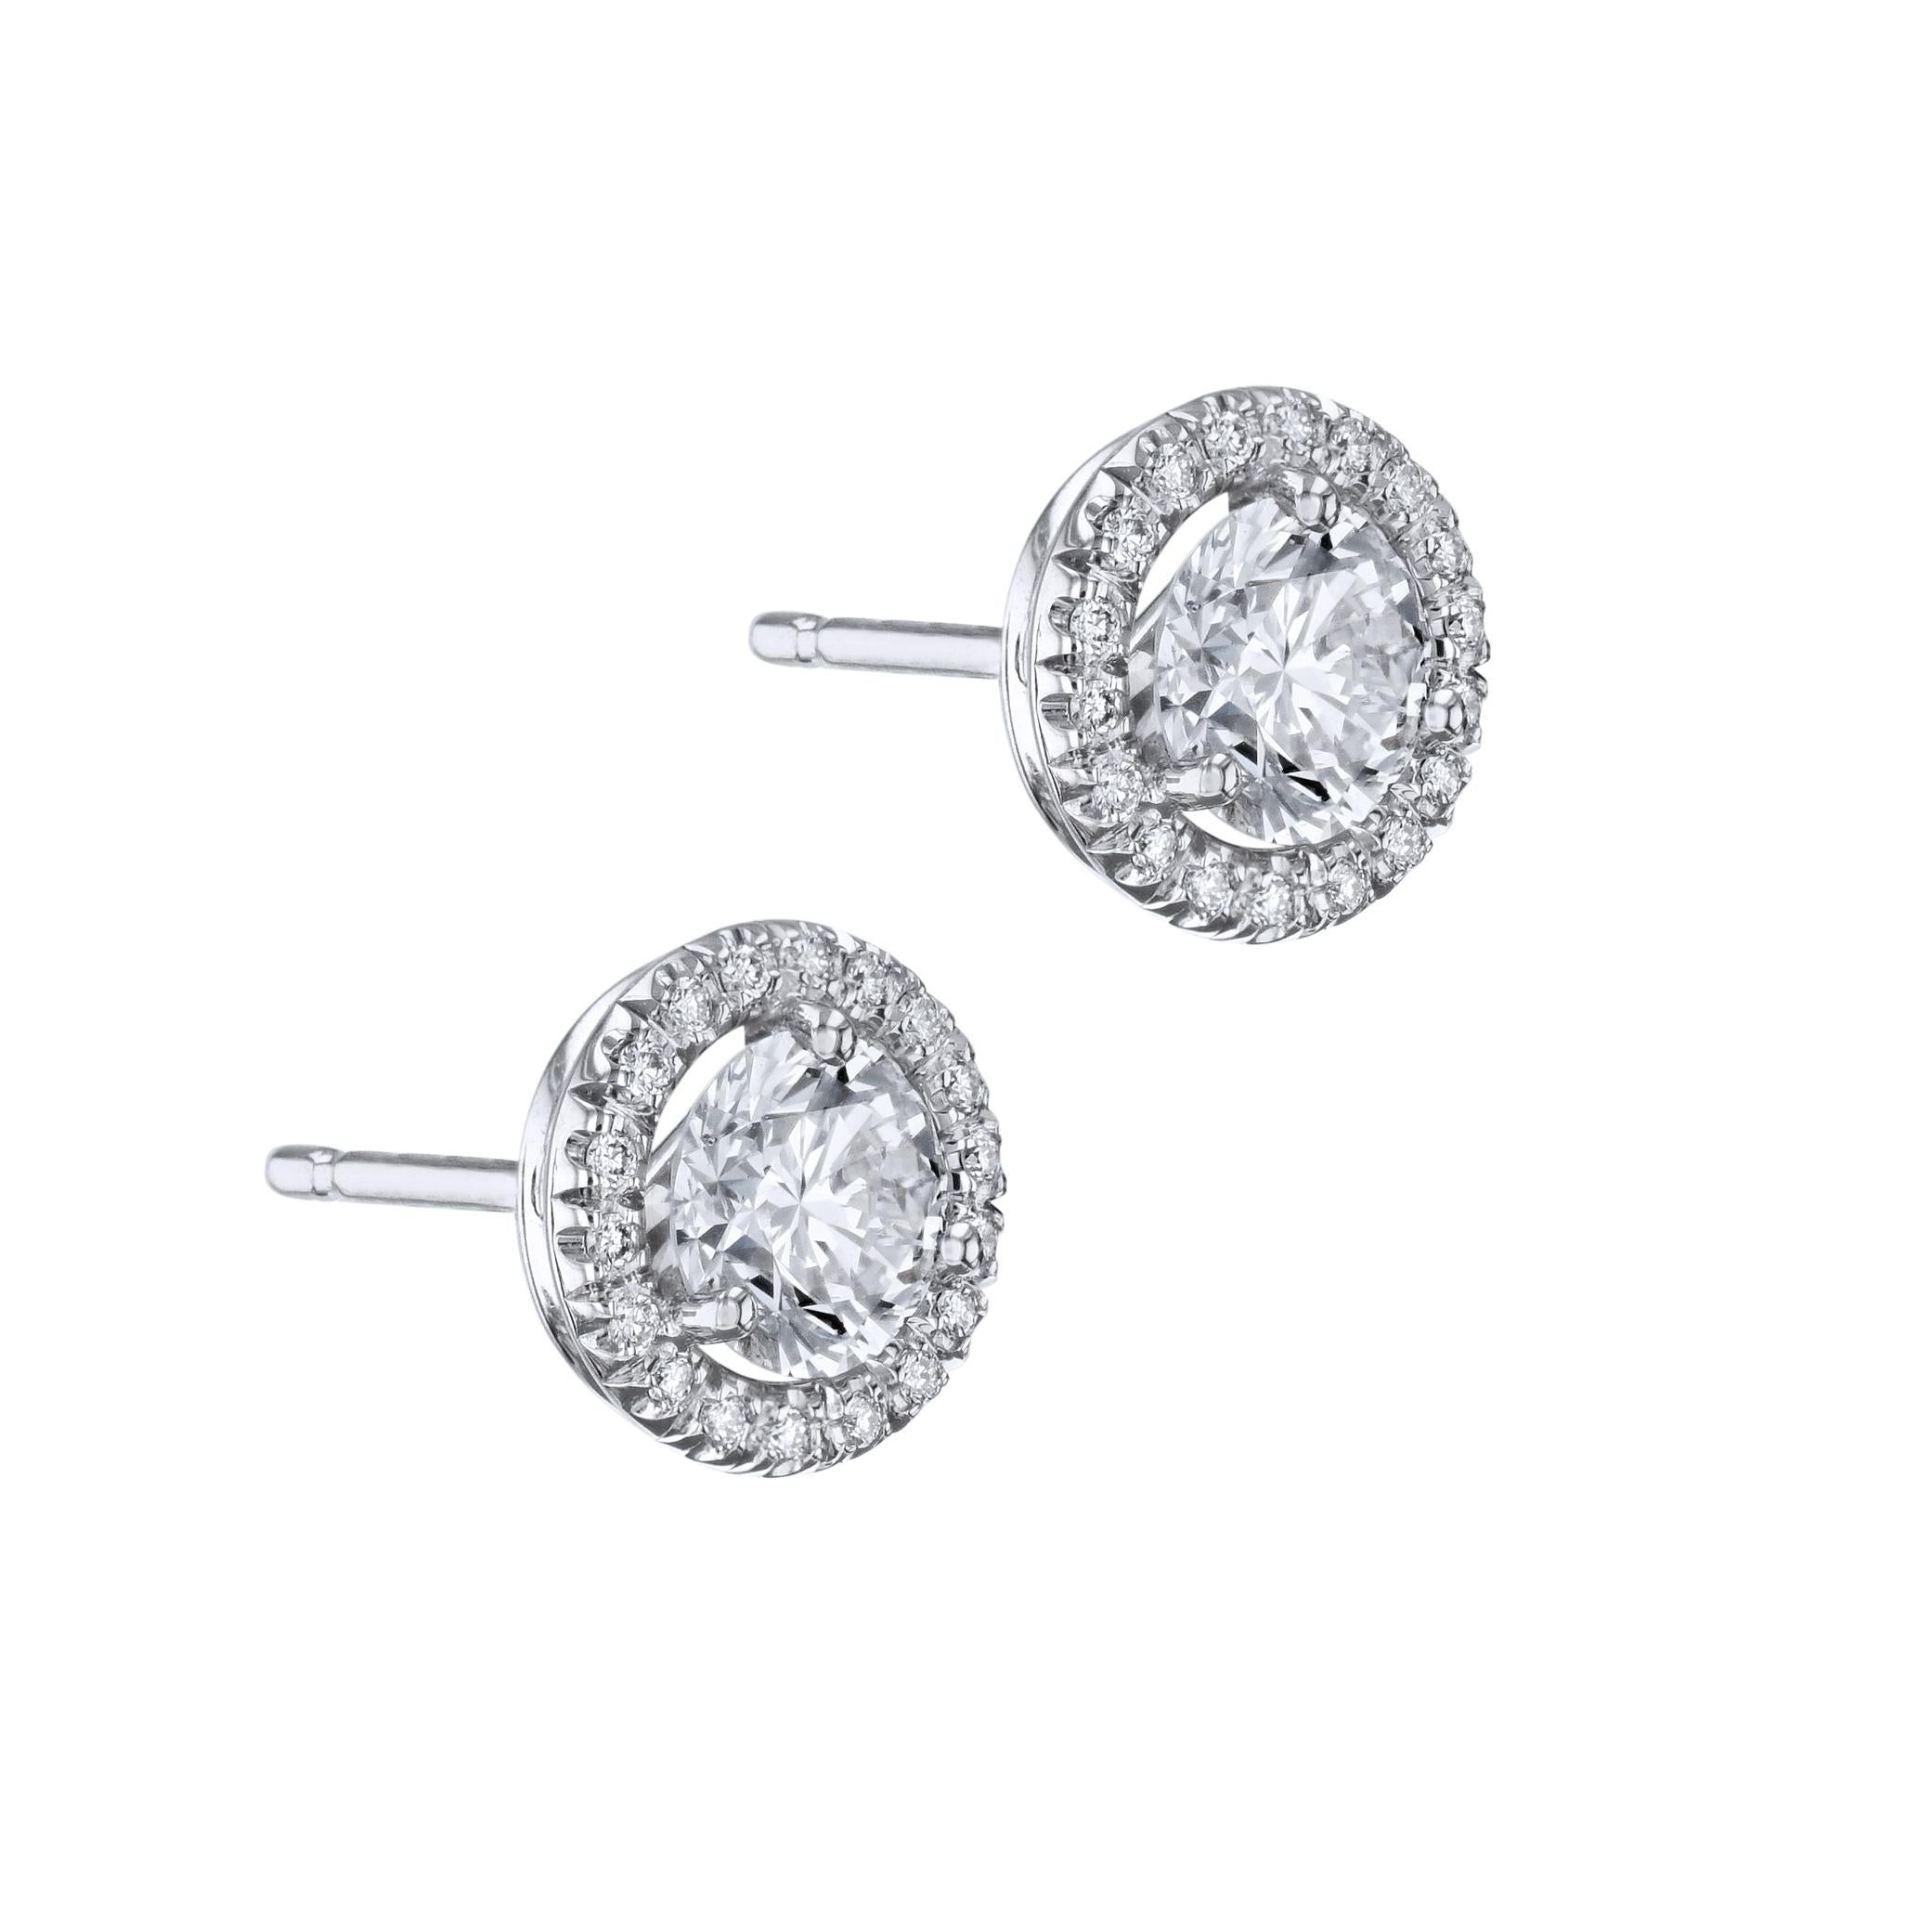 Schimmern Sie elegant mit unseren Diamant- und Pave-Ohrsteckern. Sie sind aus 18-karätigem Weißgold gefertigt und haben in der Mitte einen Diamanten, der für zusätzlichen Glanz sorgt. Diese wunderschönen, handgefertigten Ohrstecker mit Diamanten